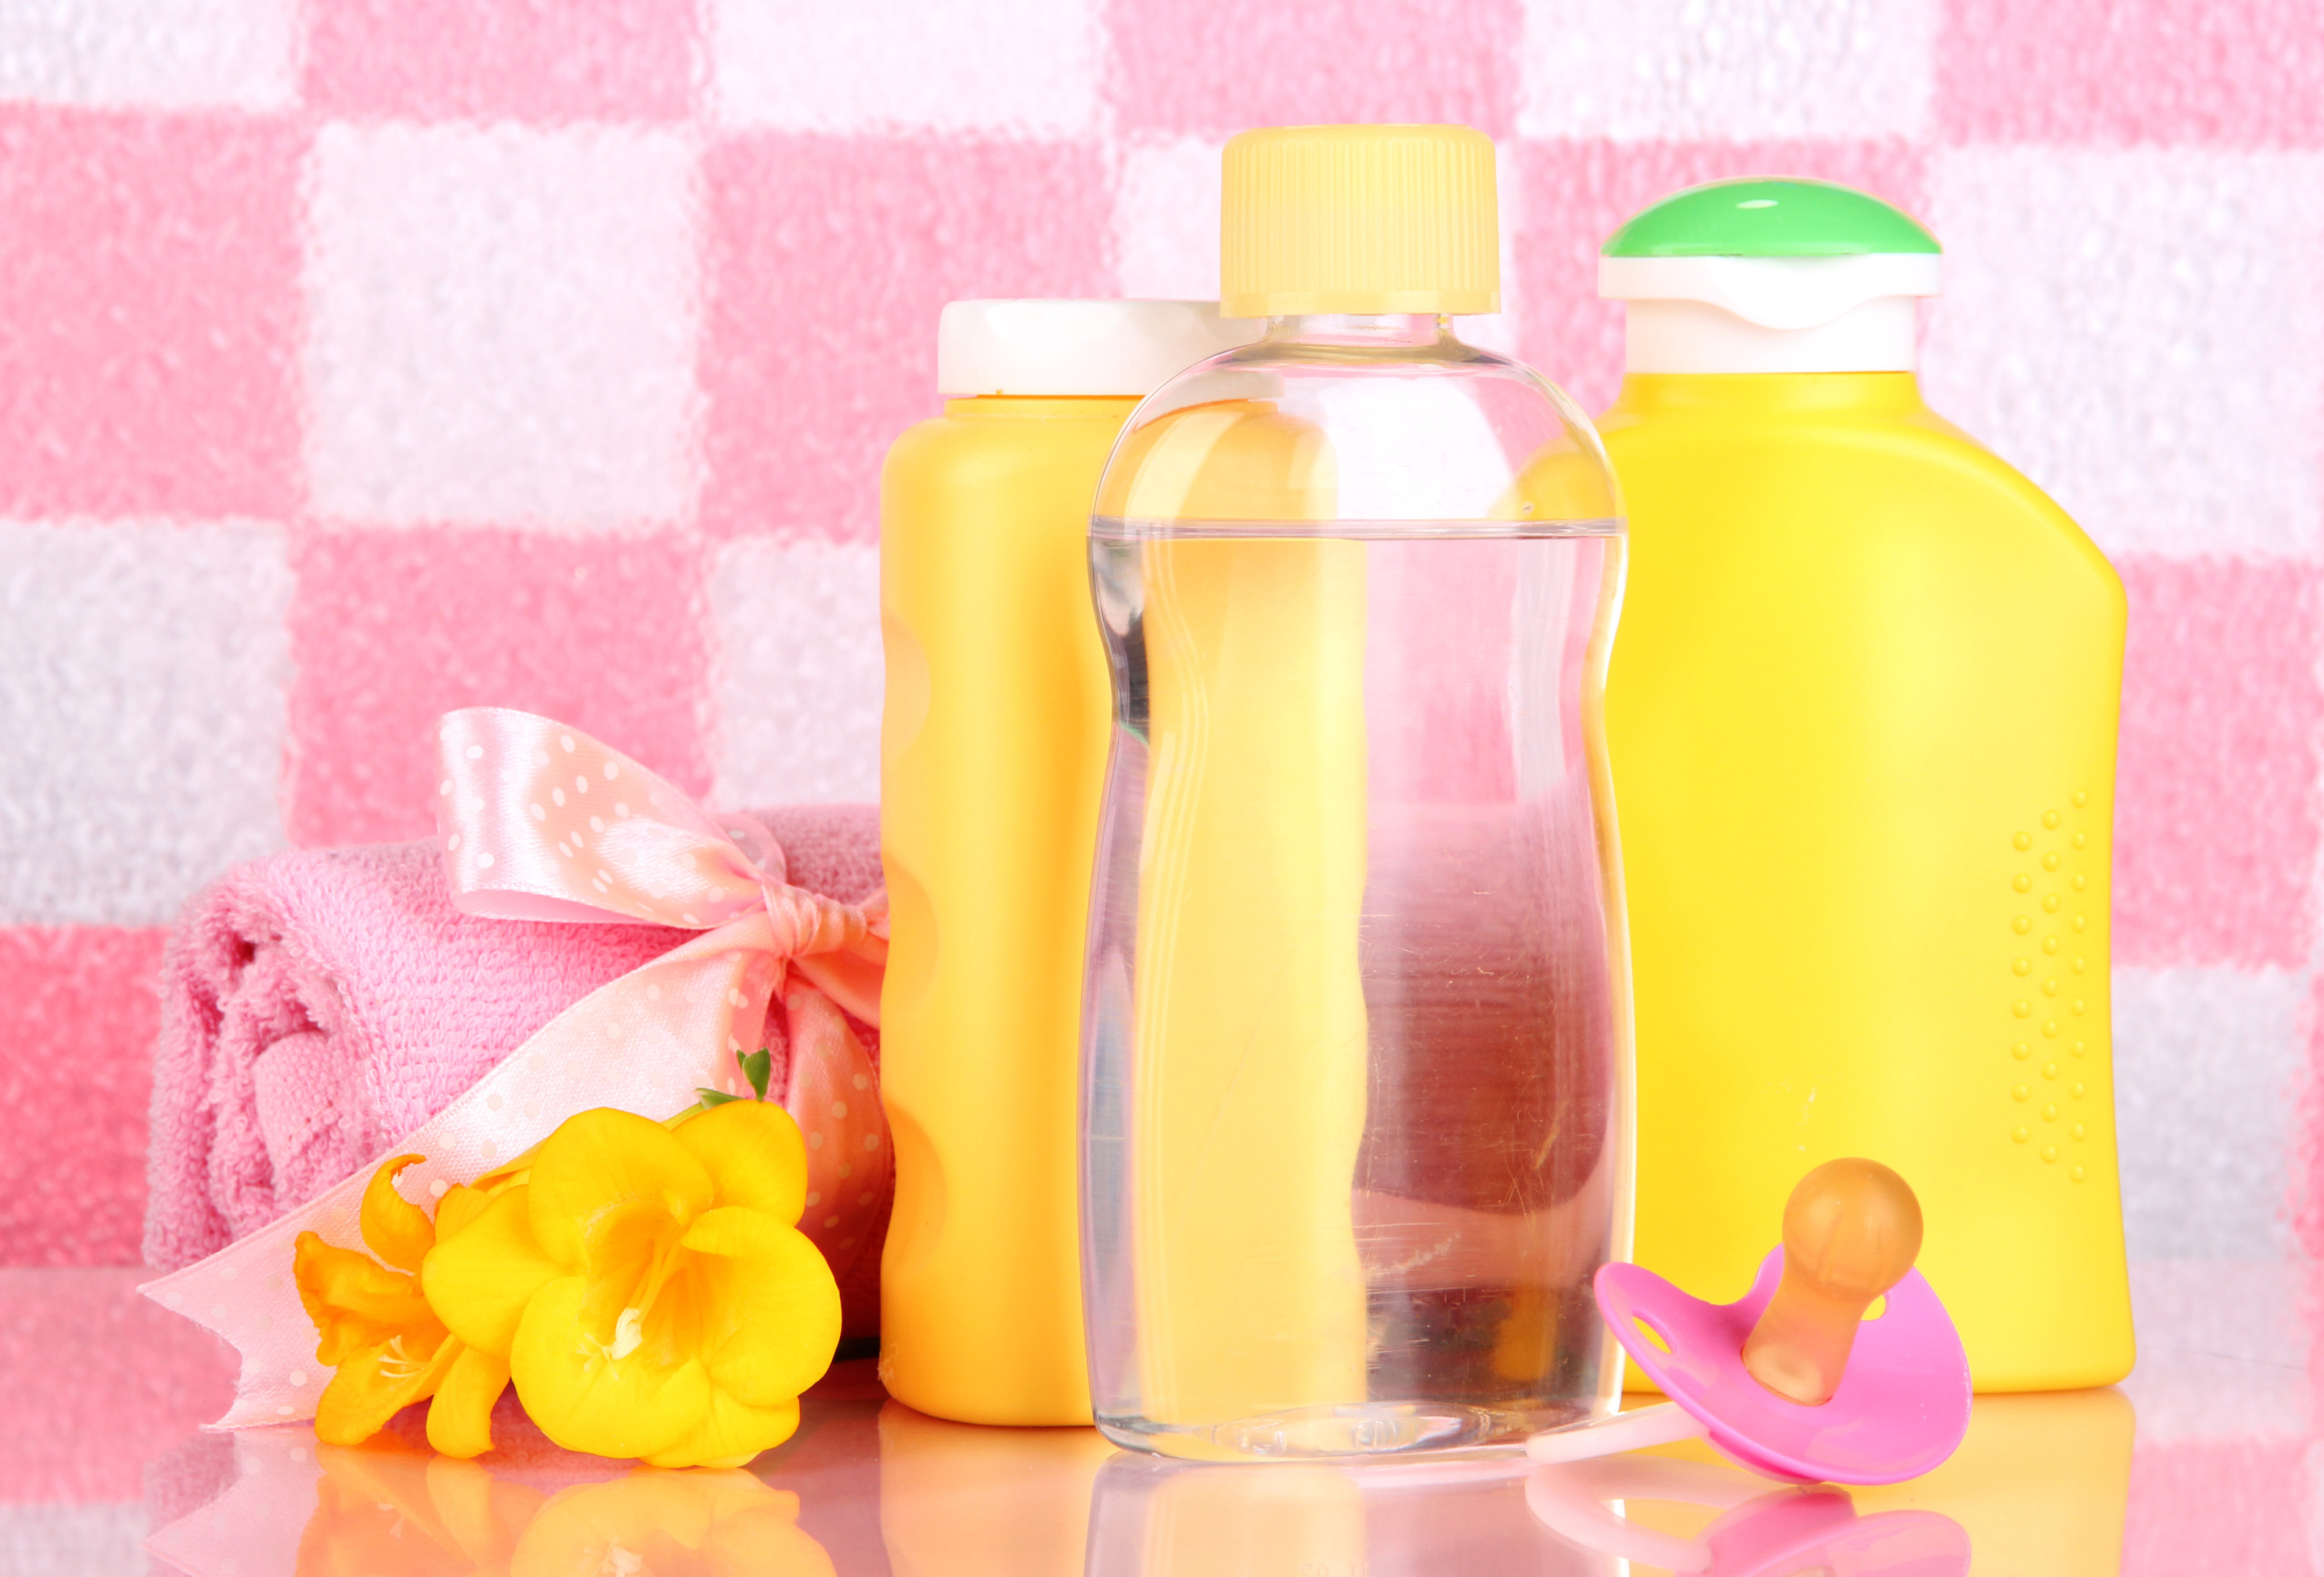 30 Household Uses for Baby Oil | Money Talks News4096 x 2779